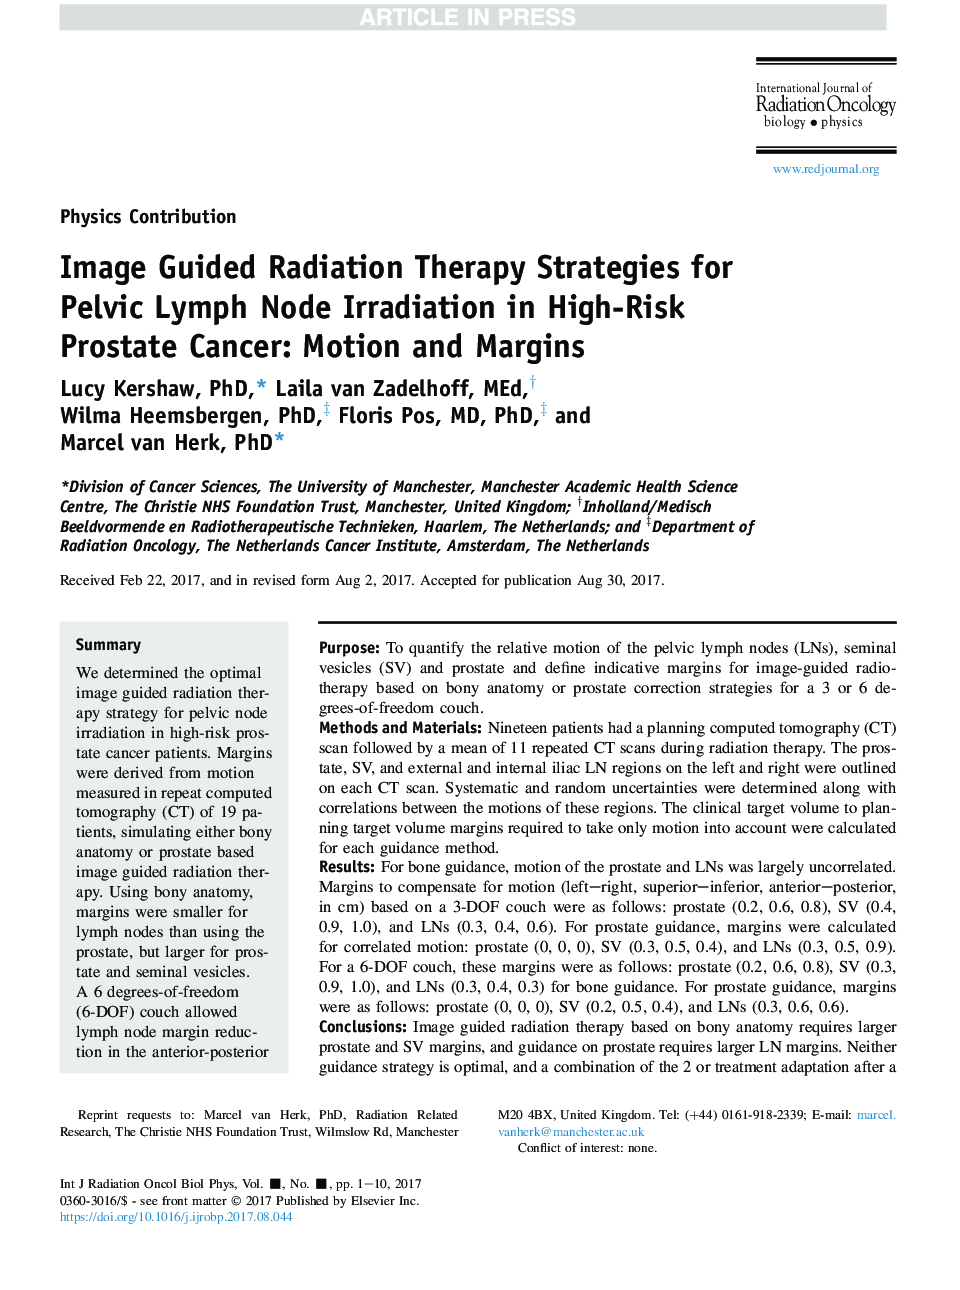 استراتژی درمان پرتو درمانی تصویر برای تابش گره لنفاوی لگن در سرطان پروستات با خطر بالا: حرکت و حاشیه 